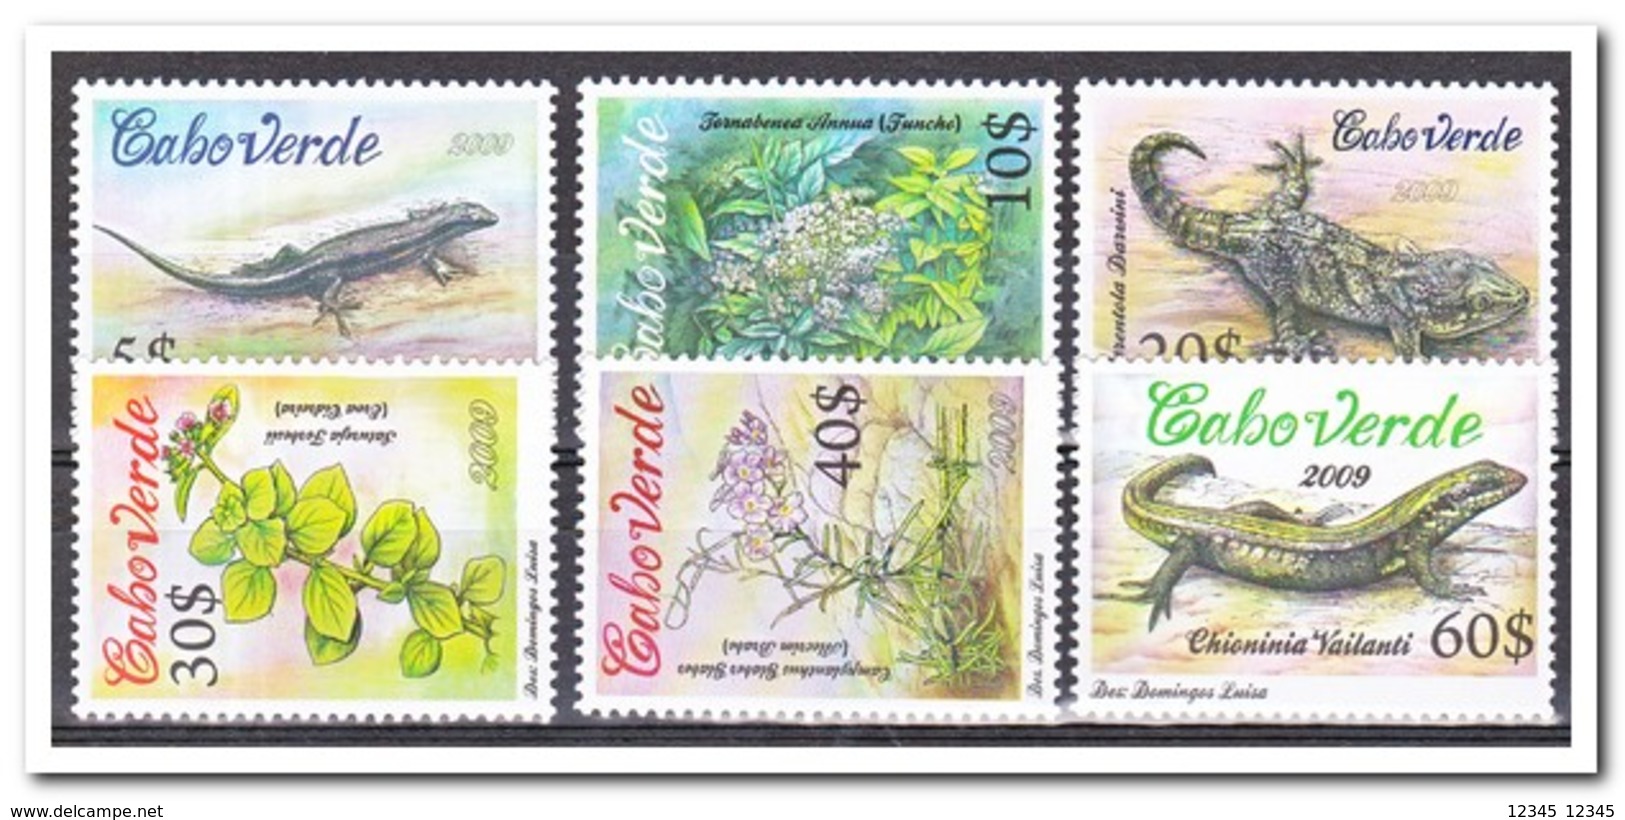 Kaap Verde 2009, Postfris MNH, Plants, Animals - Kaapverdische Eilanden